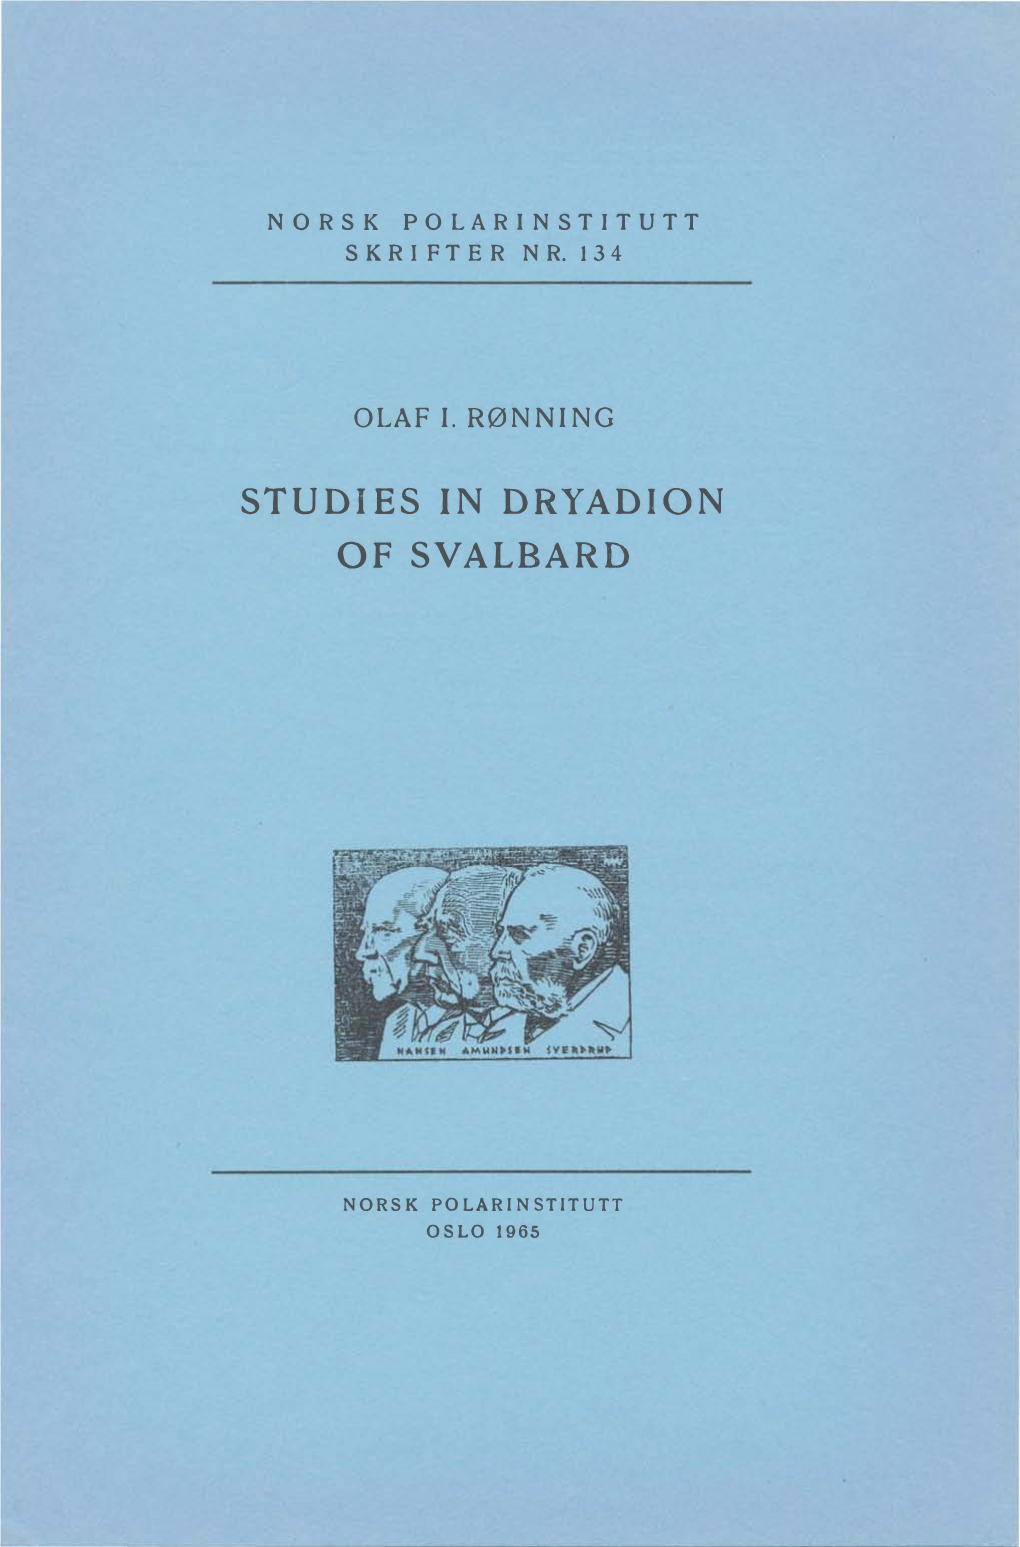 Studies in Dryadion of Svalbard